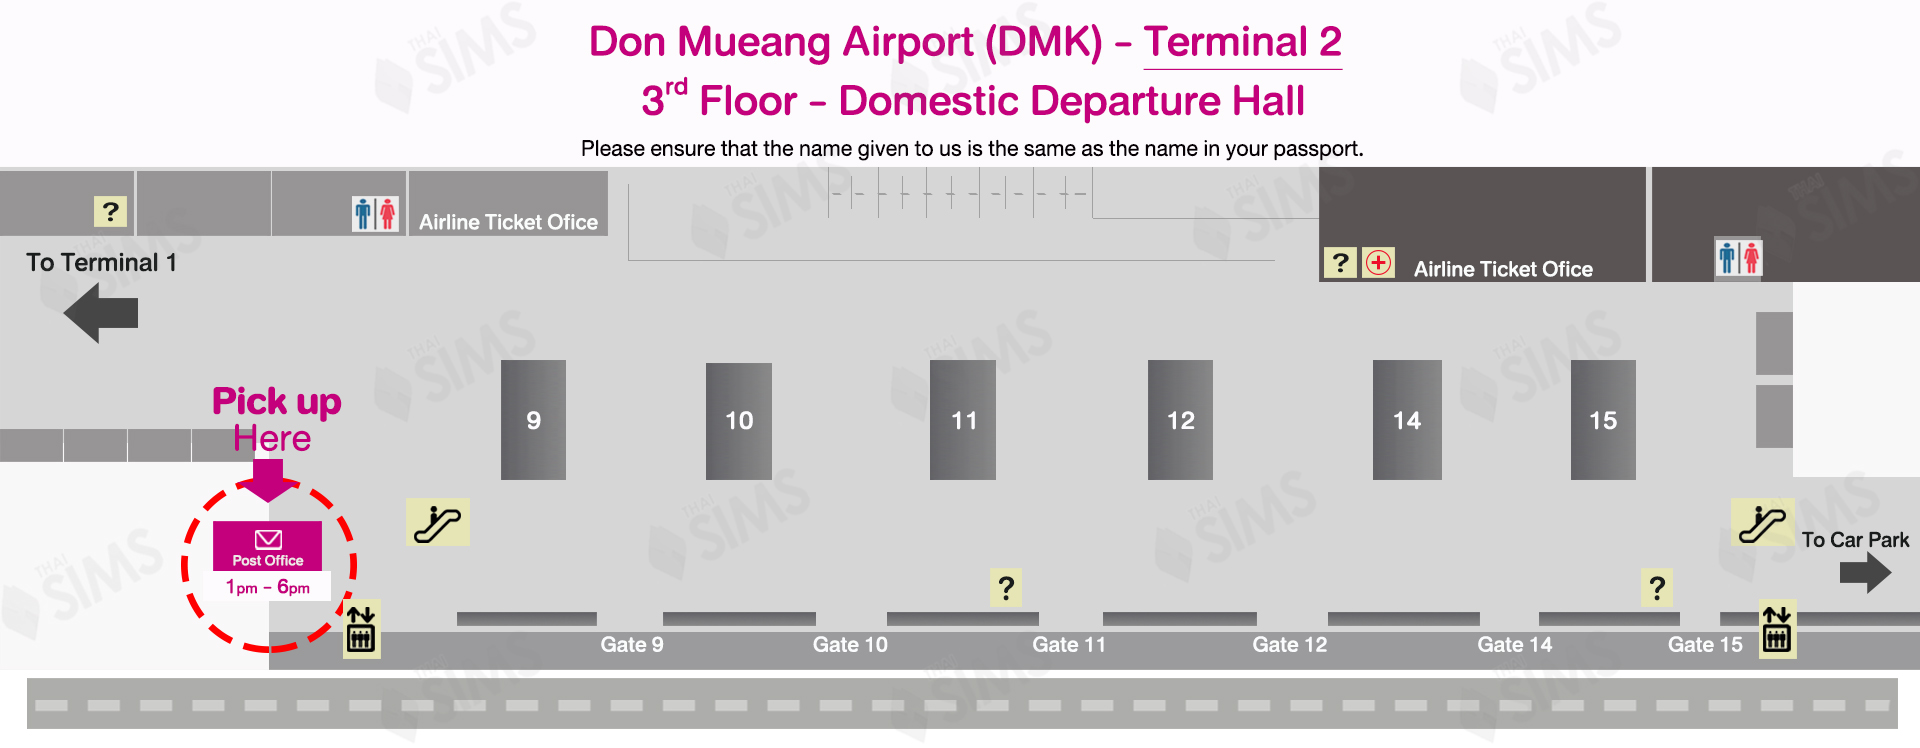 DMK Airport Terminal 2-Pickup